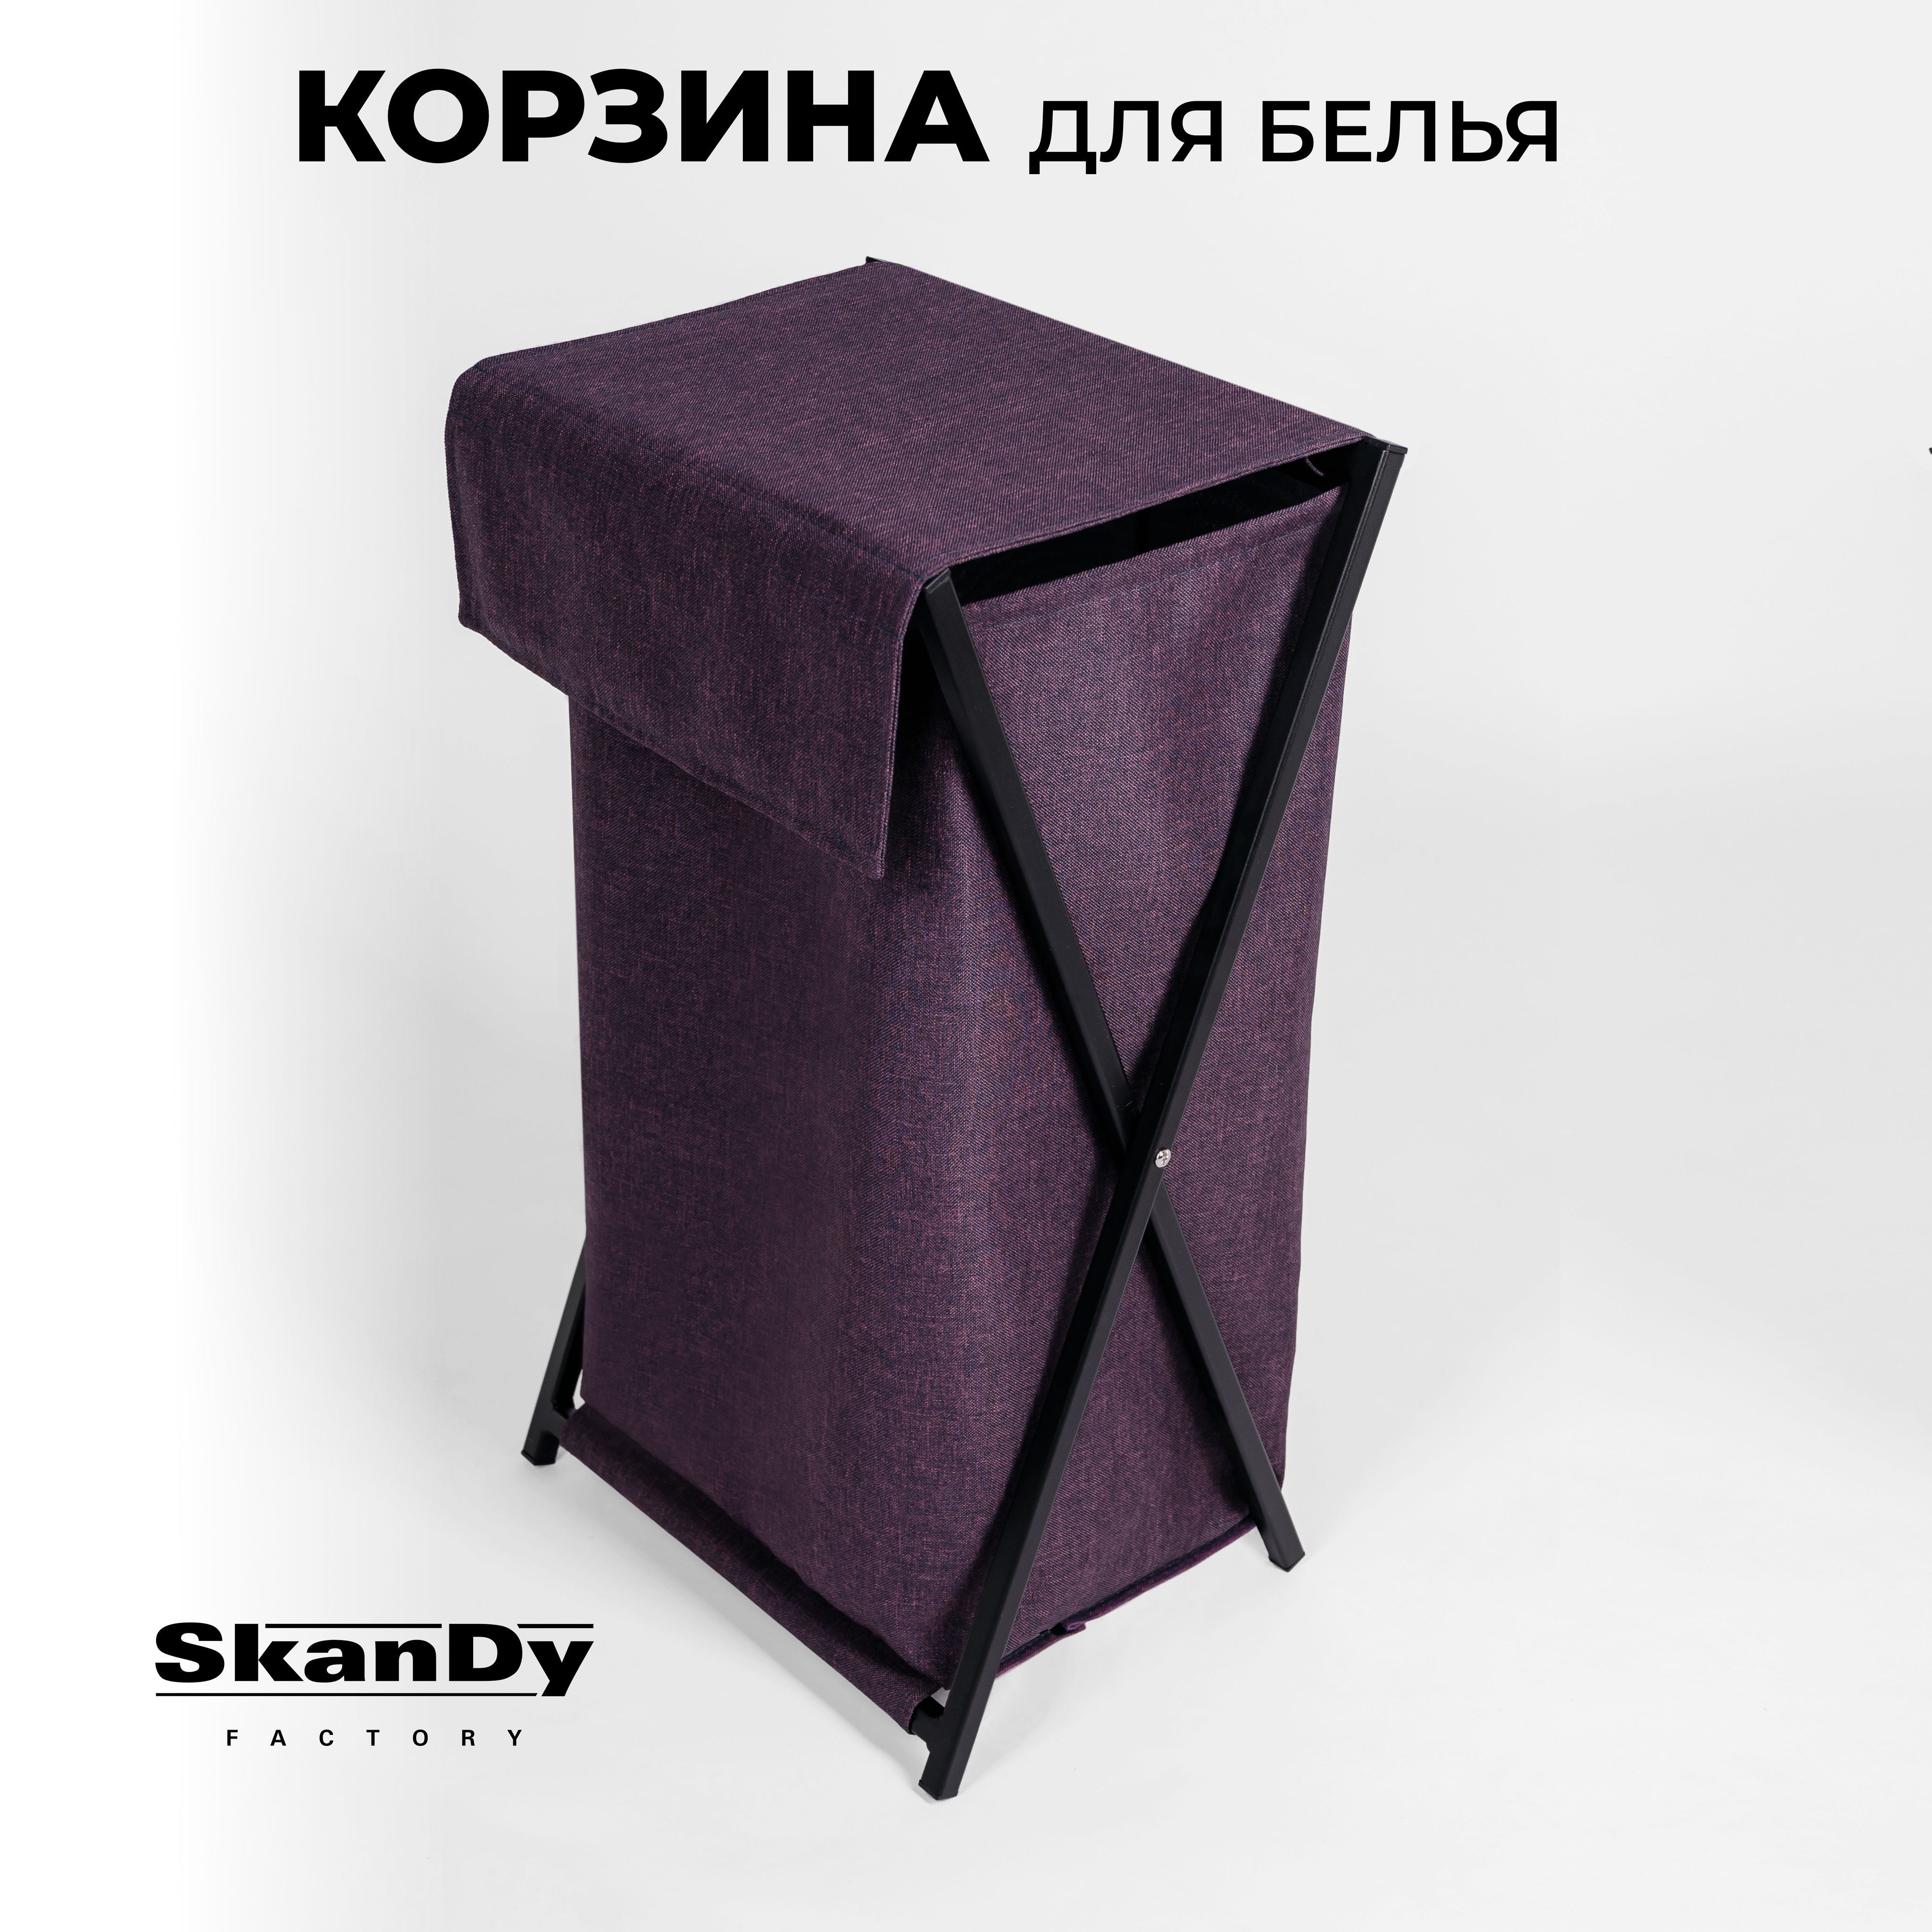 Складная корзина для хранения белья в ванной с крышкой SkanDy Factory, пурпурный